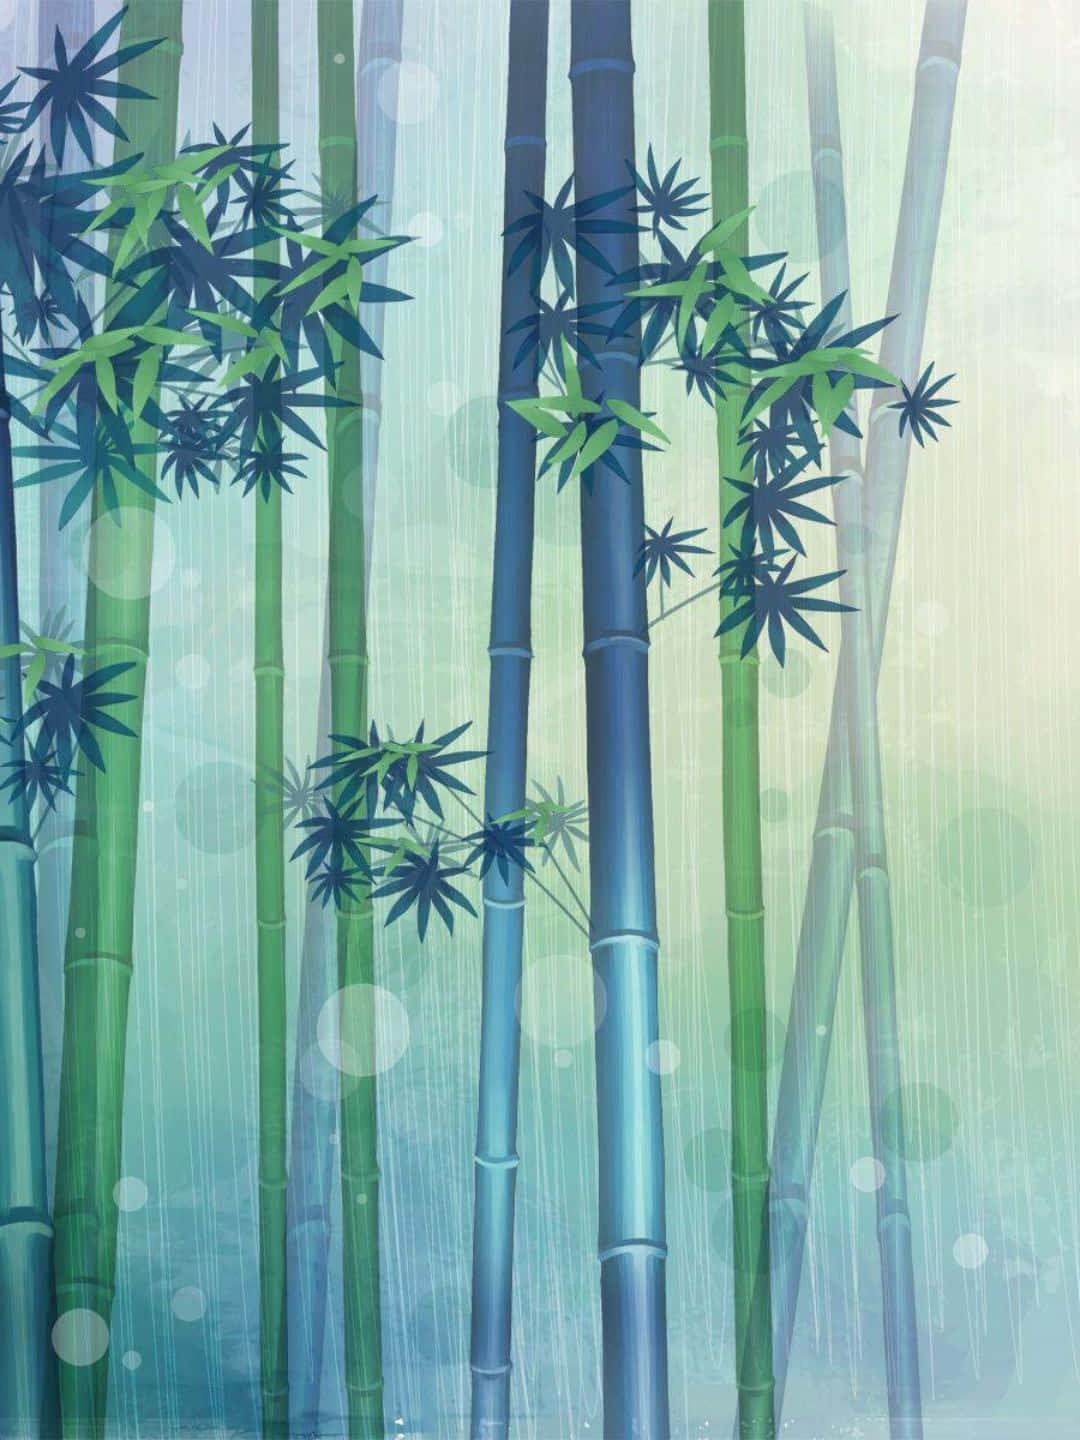 1440pbakgrundsbild Av Bambu Fanart-ritning Av Bambuträd Med Löv.